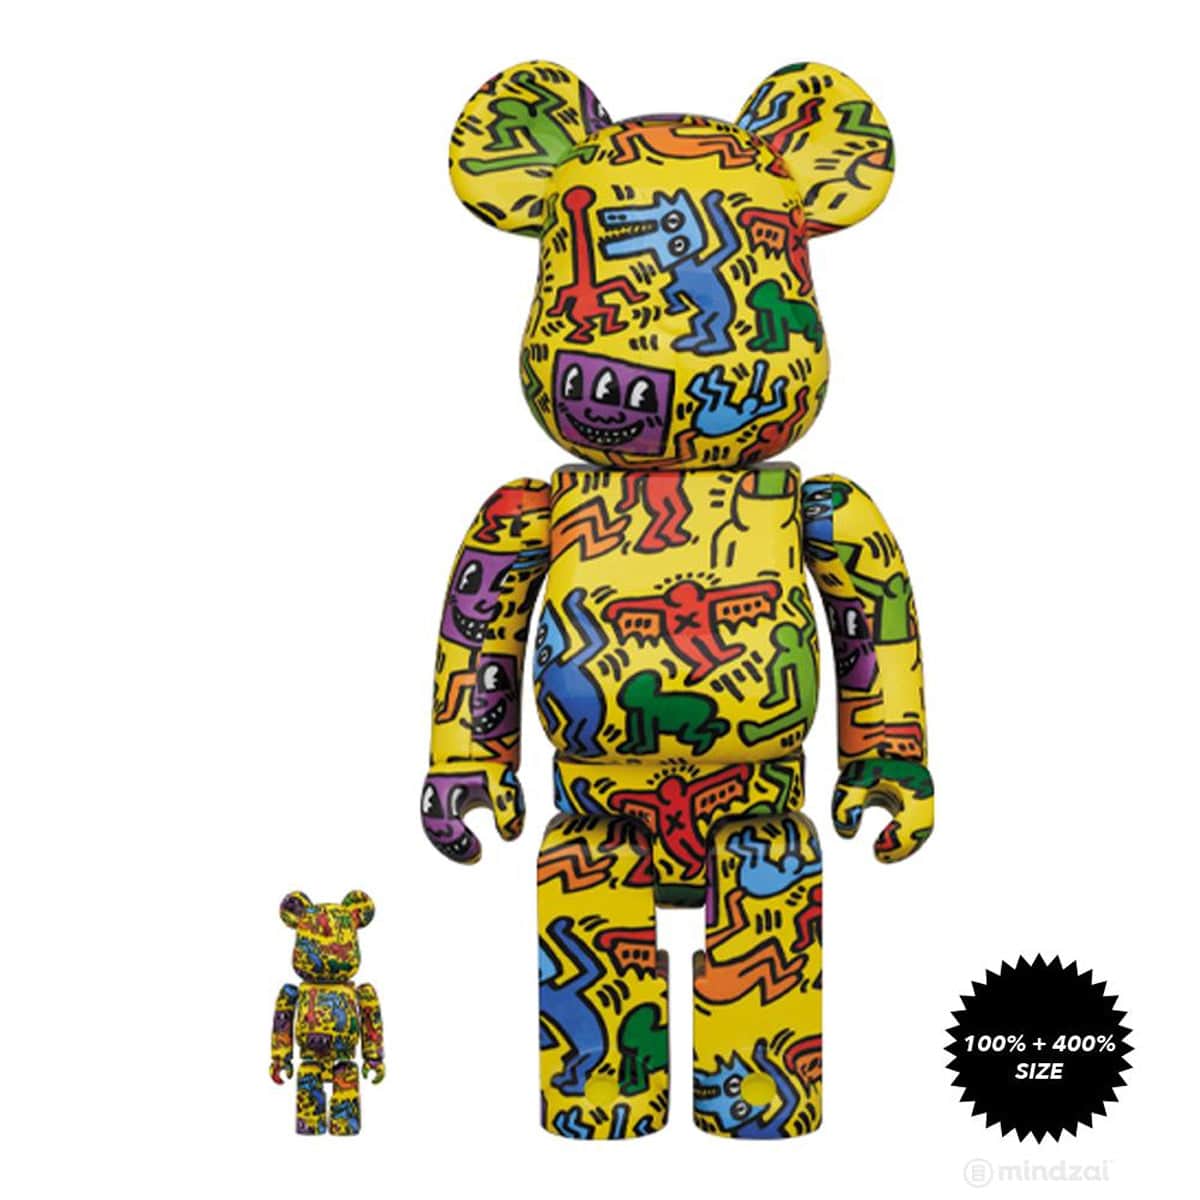 Keith Haring #5 Bearbrick 400% & 100% Combo by Medicom